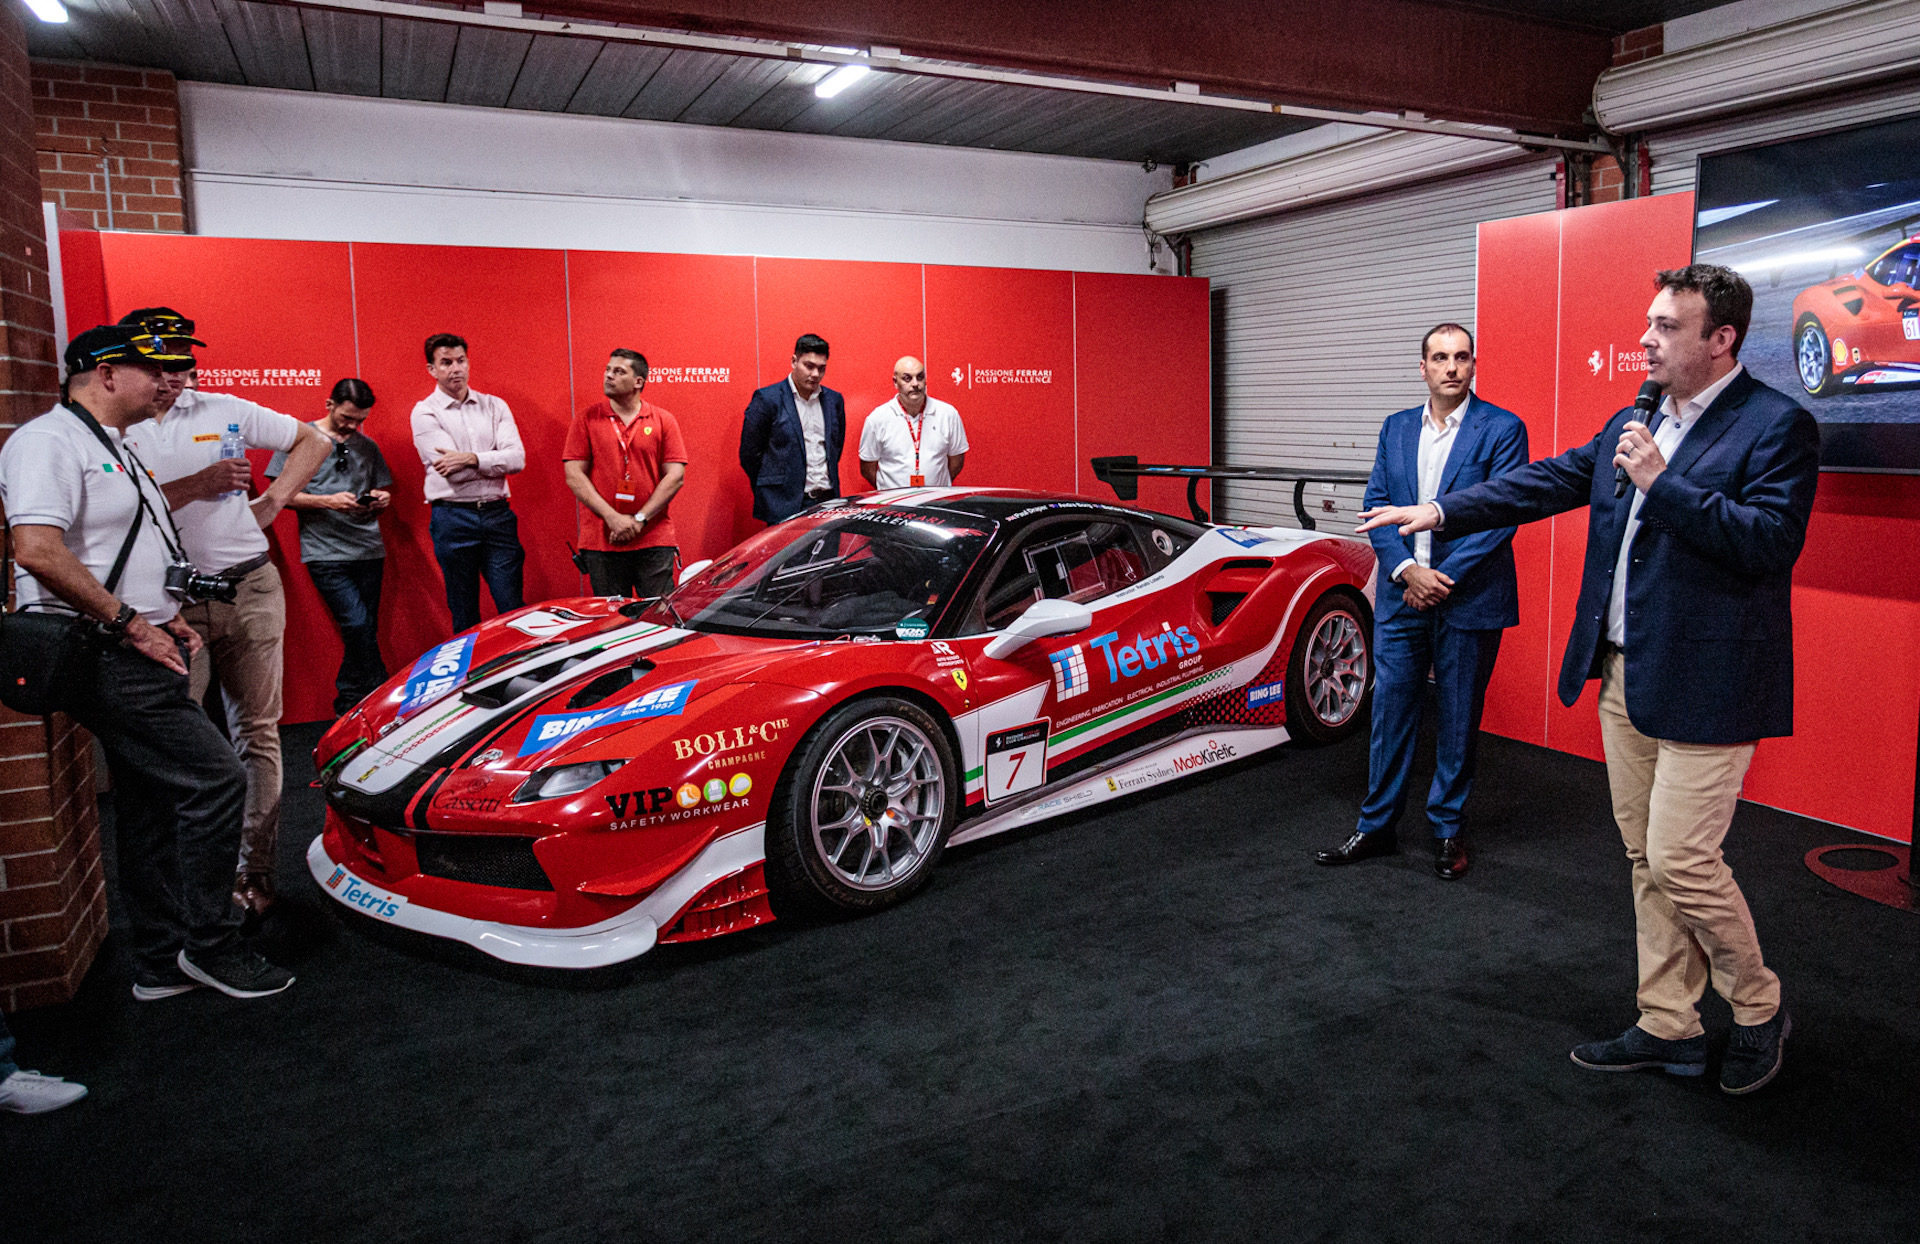 2020 Passione Ferrari Club Challenge announced for Australasia